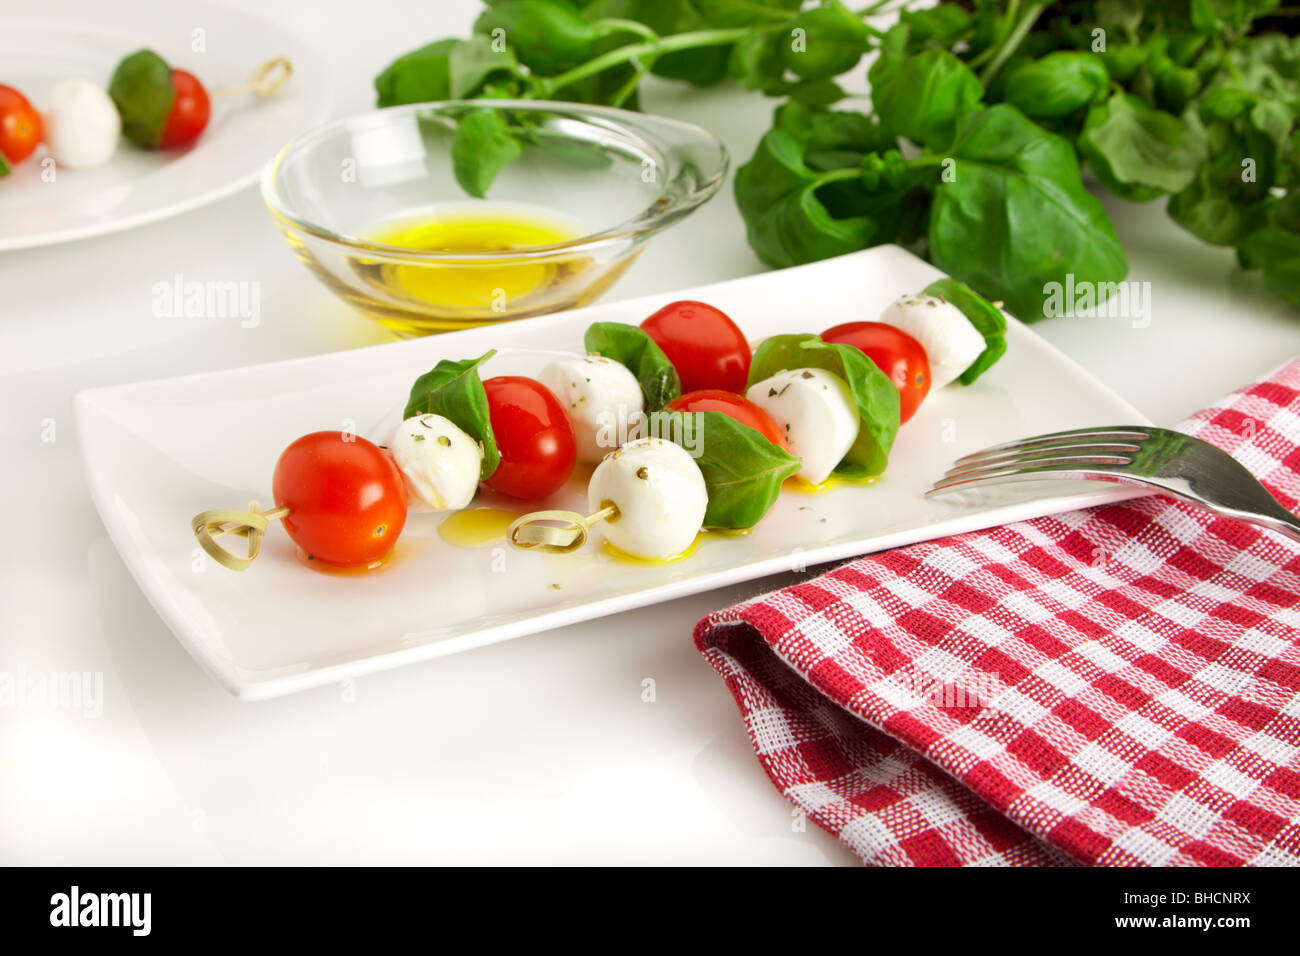 Salade caprese - spitted tomates cerise, boules de mozzarella et les feuilles de basilic sur une plaque rectangulaire, avec de l'huile d'olive raffinée Banque D'Images